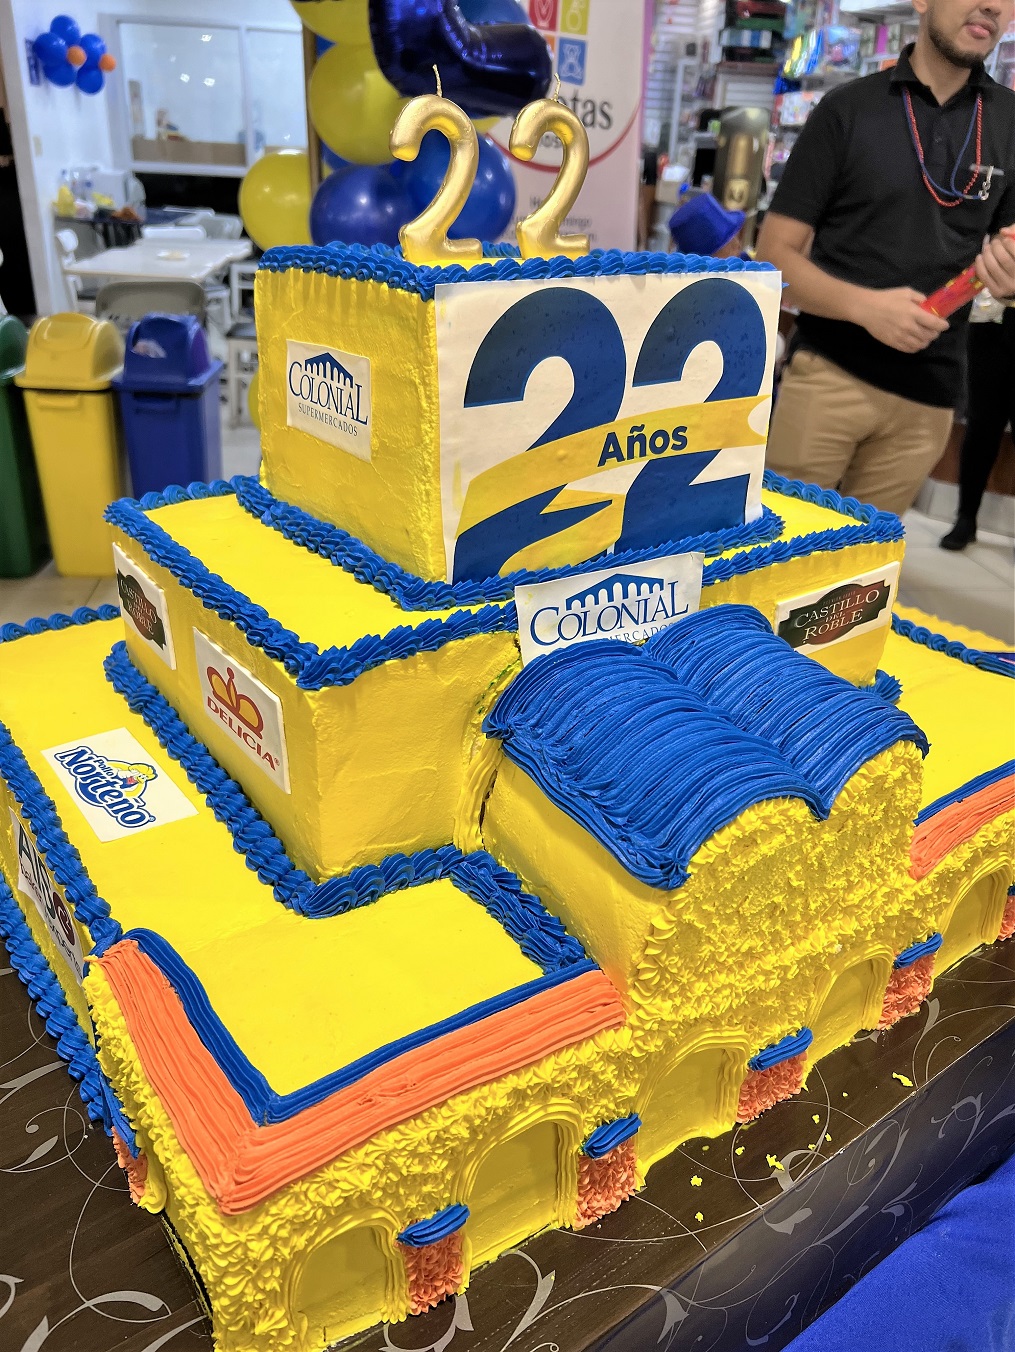 Supermercados Colonial celebró su mes de aniversario número 22 a lo grande en sus 4 sucursales